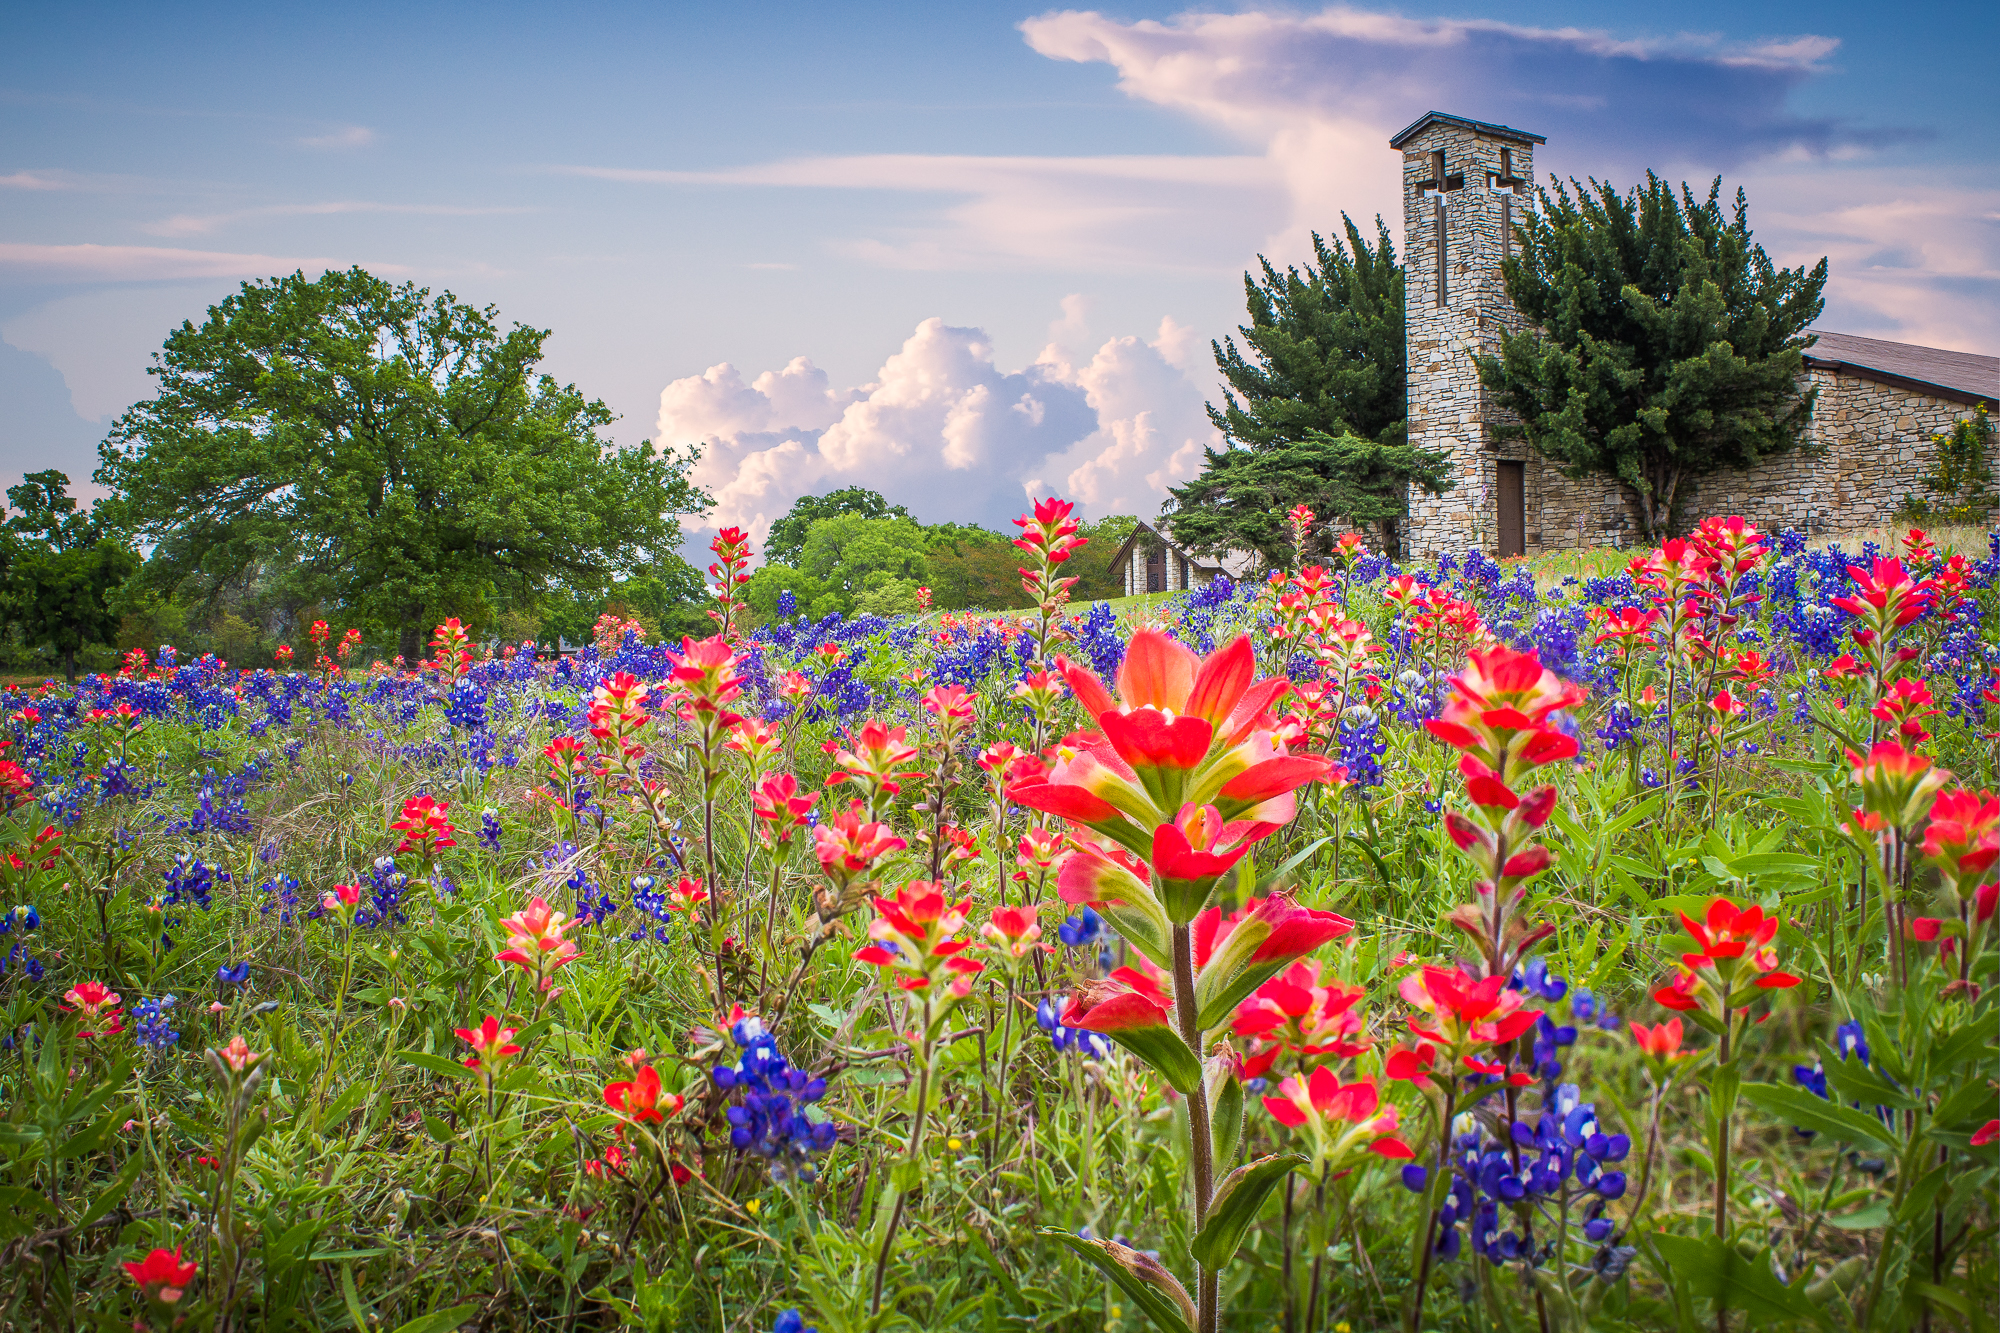 Spring Flowers in Austin! – Scott King